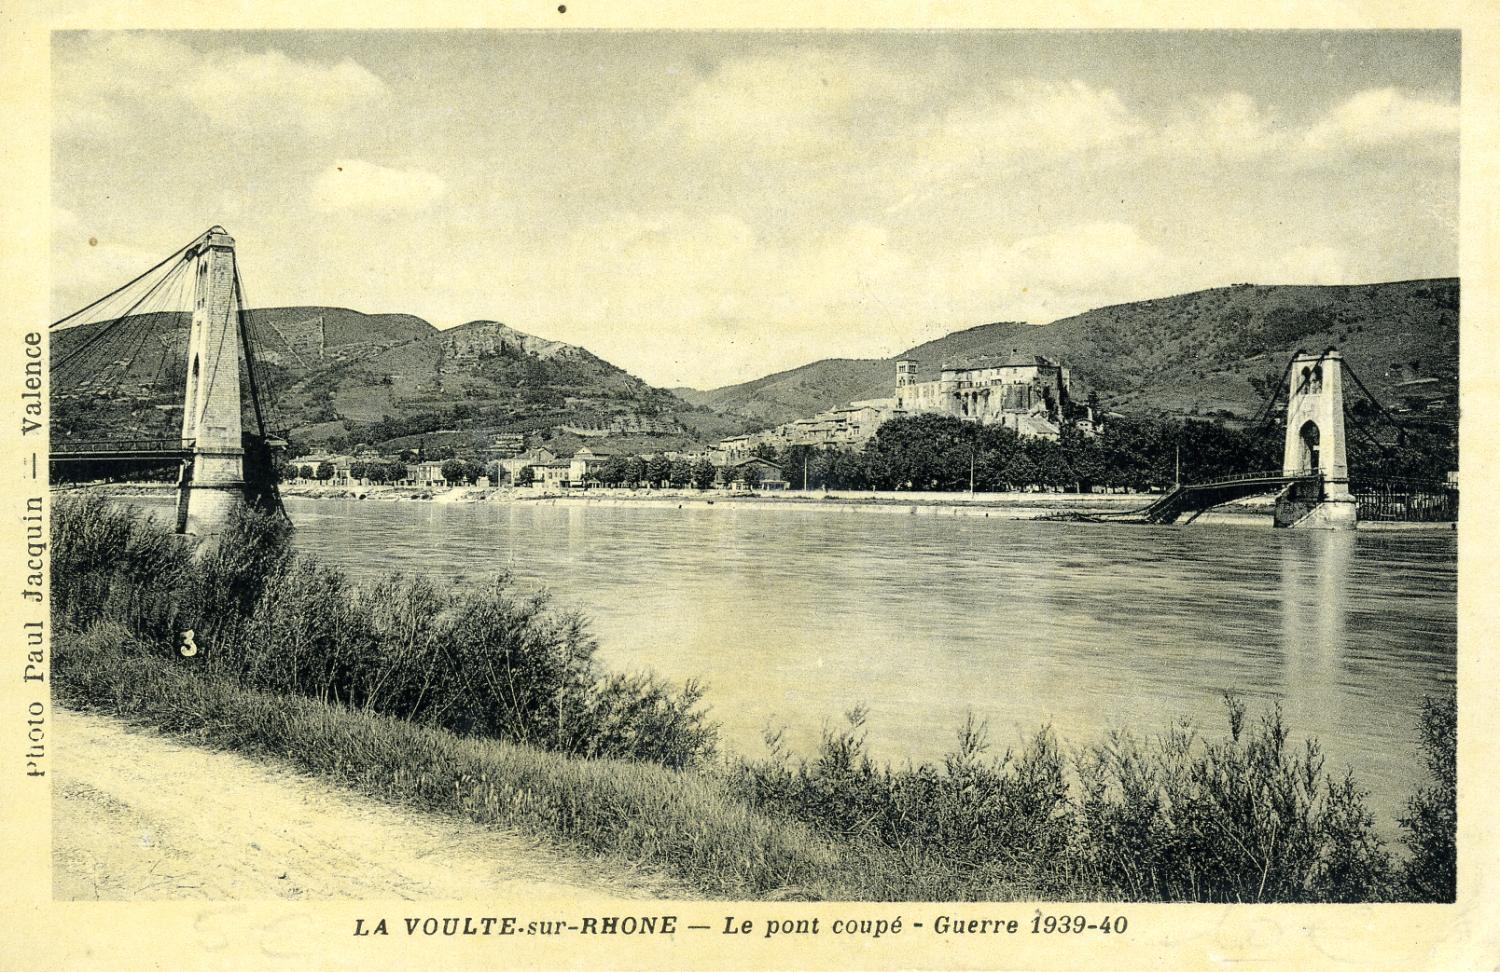 La Voulte-sur-Rhône